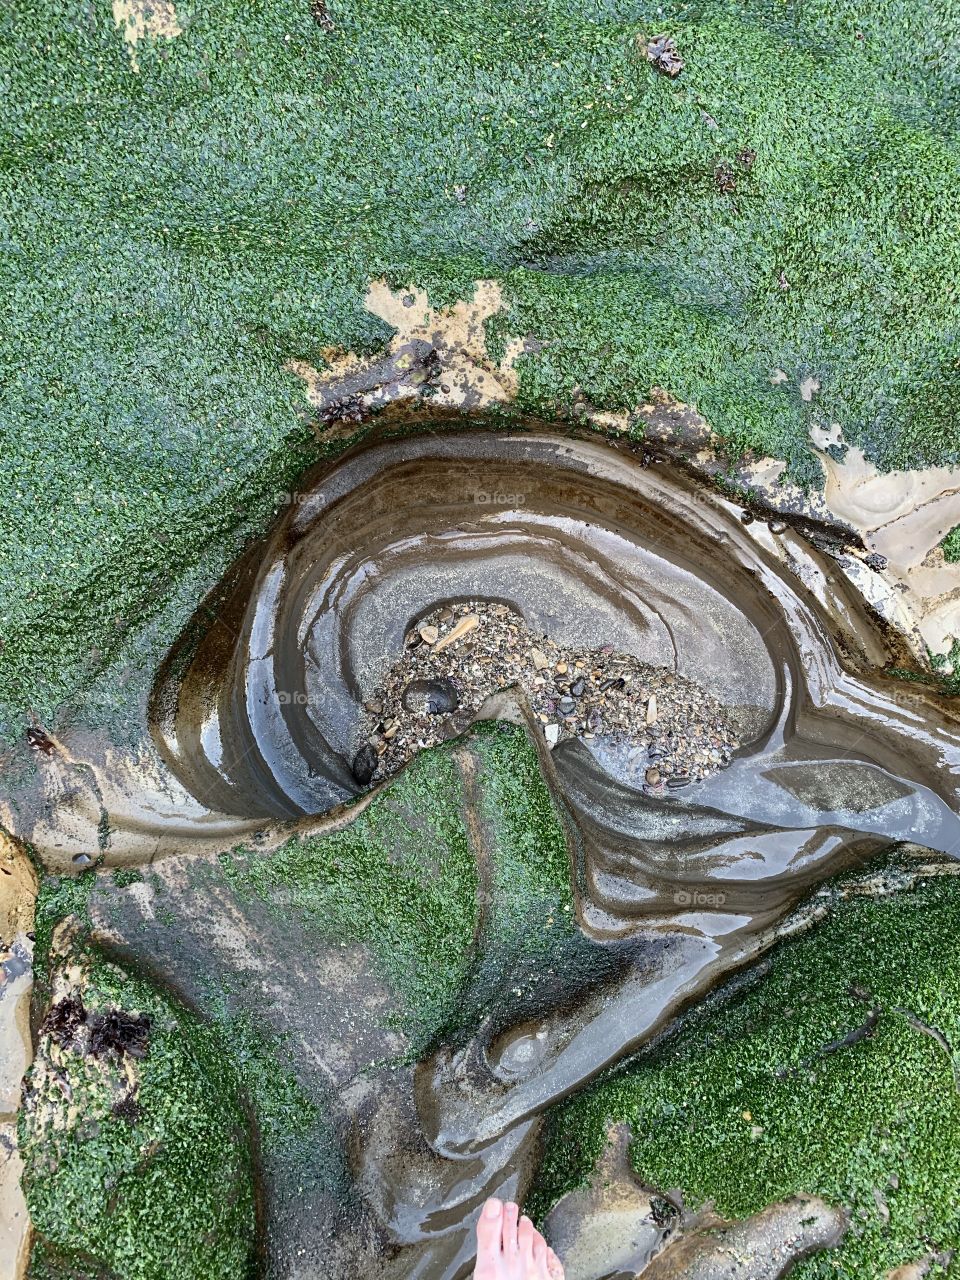 Ocean formed swirl in green, mossy rock